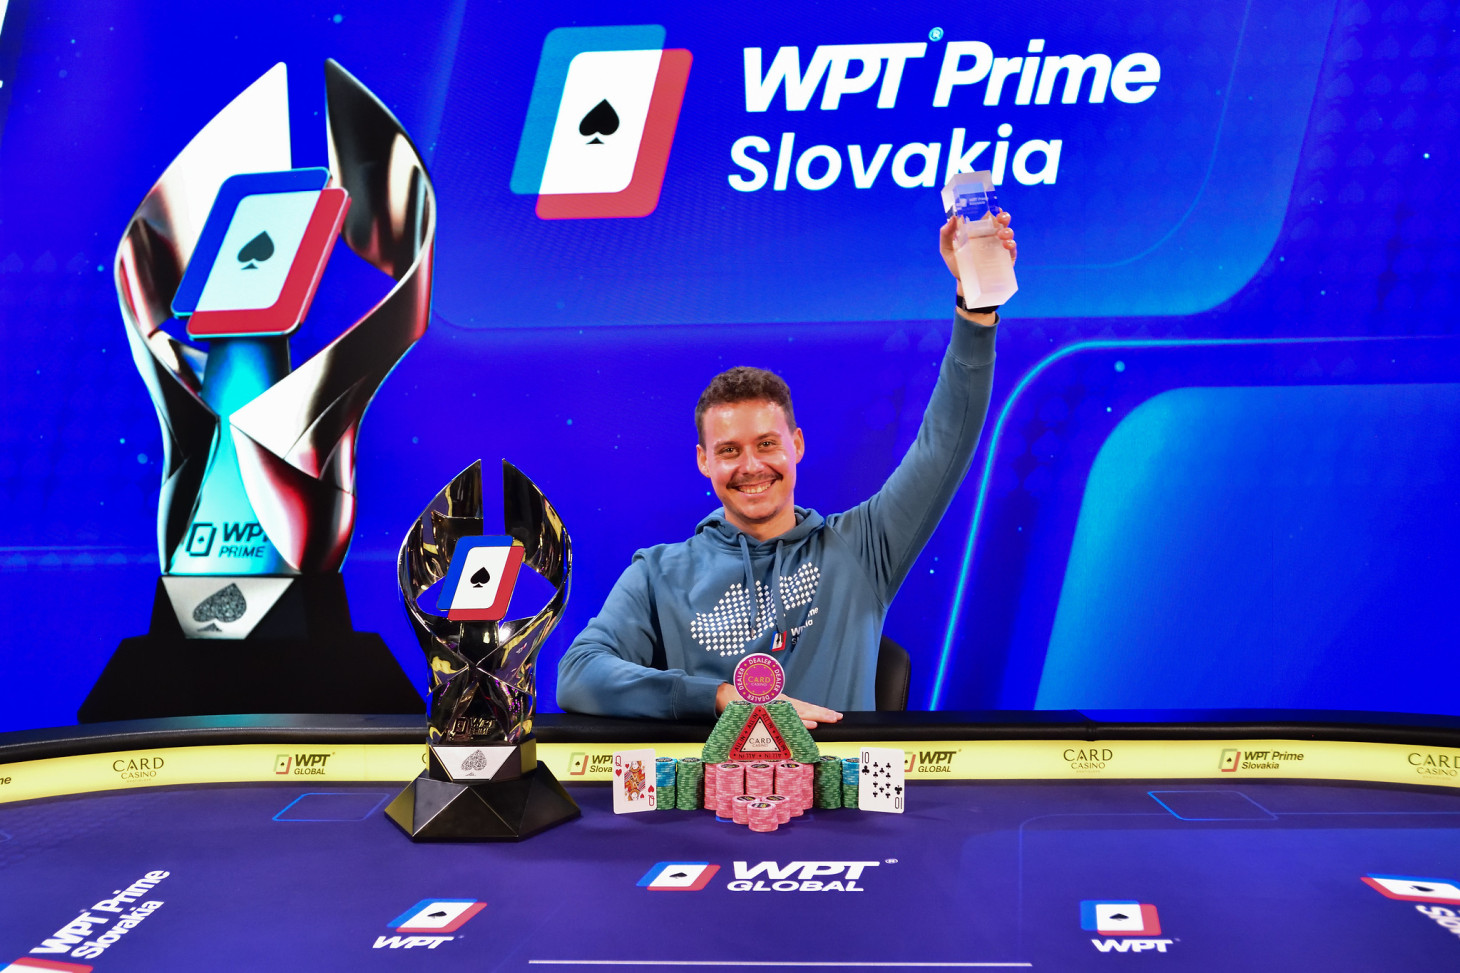 WPT Prime wird wie durch ein Wunder von German Gumz gewonnen, Cibicek wird Dritter für 53.000 €. Wer hat die anderen Turniere gewonnen?